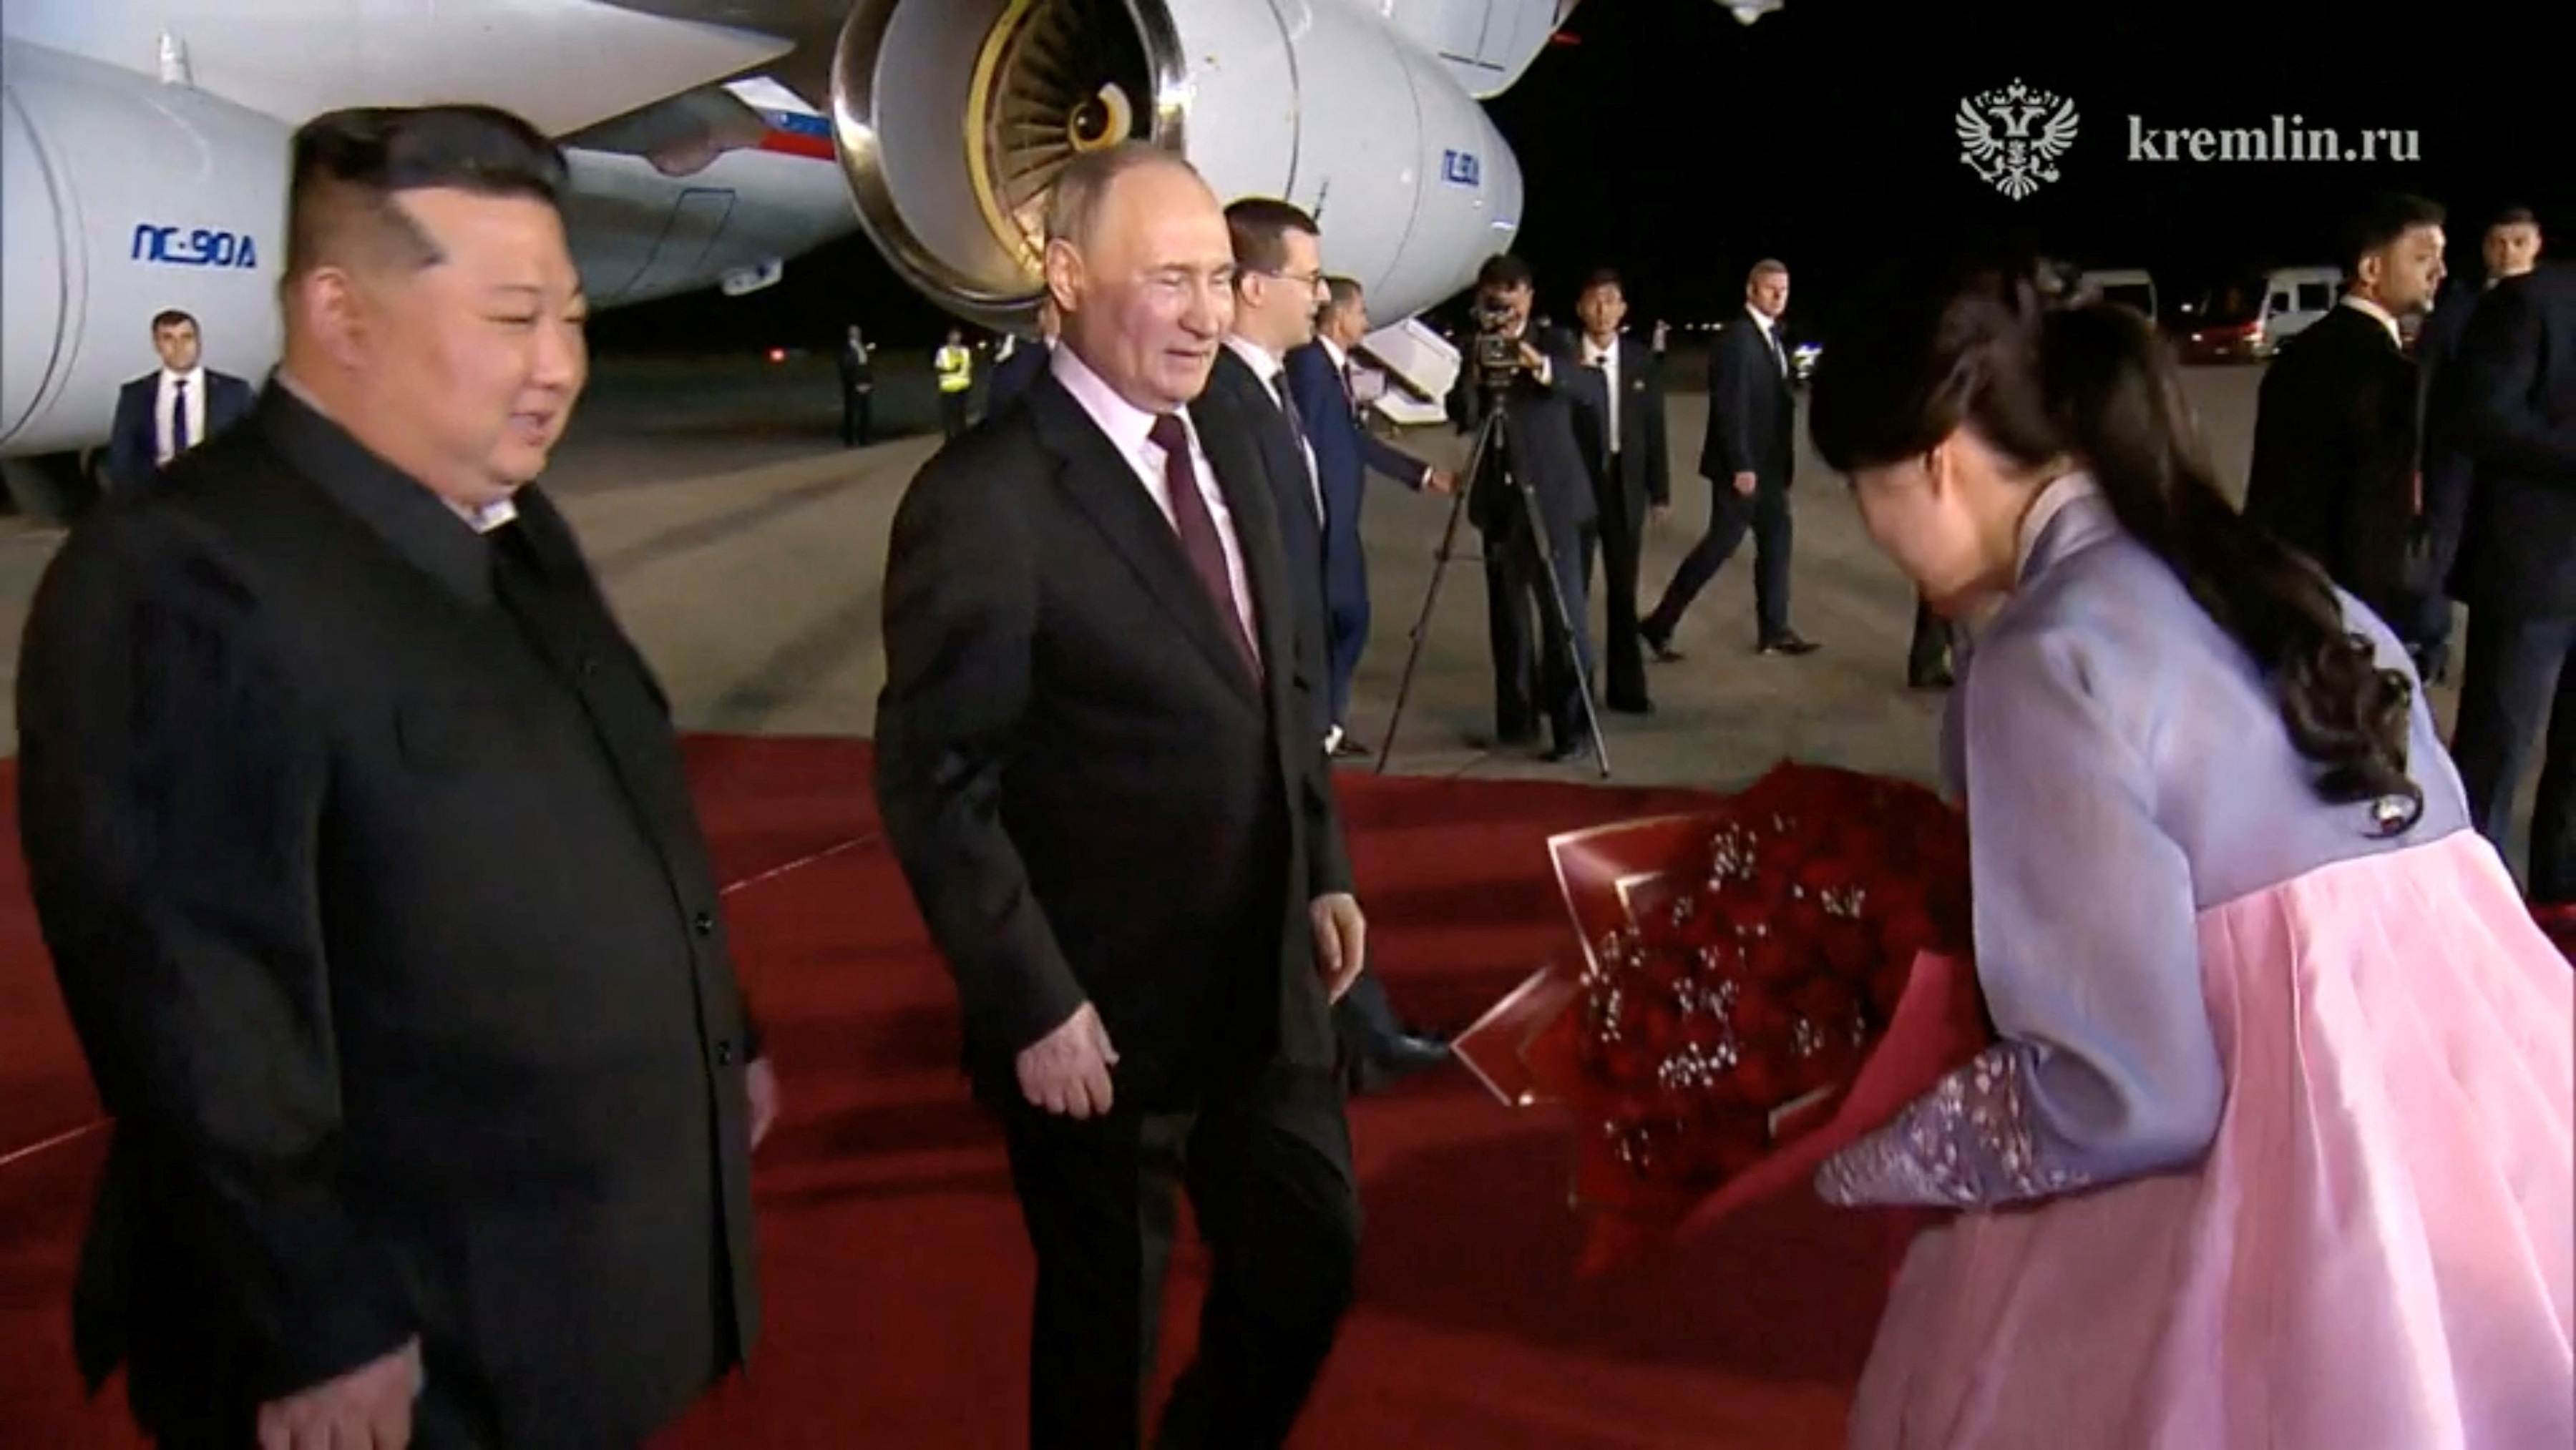 View - Lễ đón tiếp trọng thể Tổng thống Putin tại Triều Tiên | Báo Dân trí